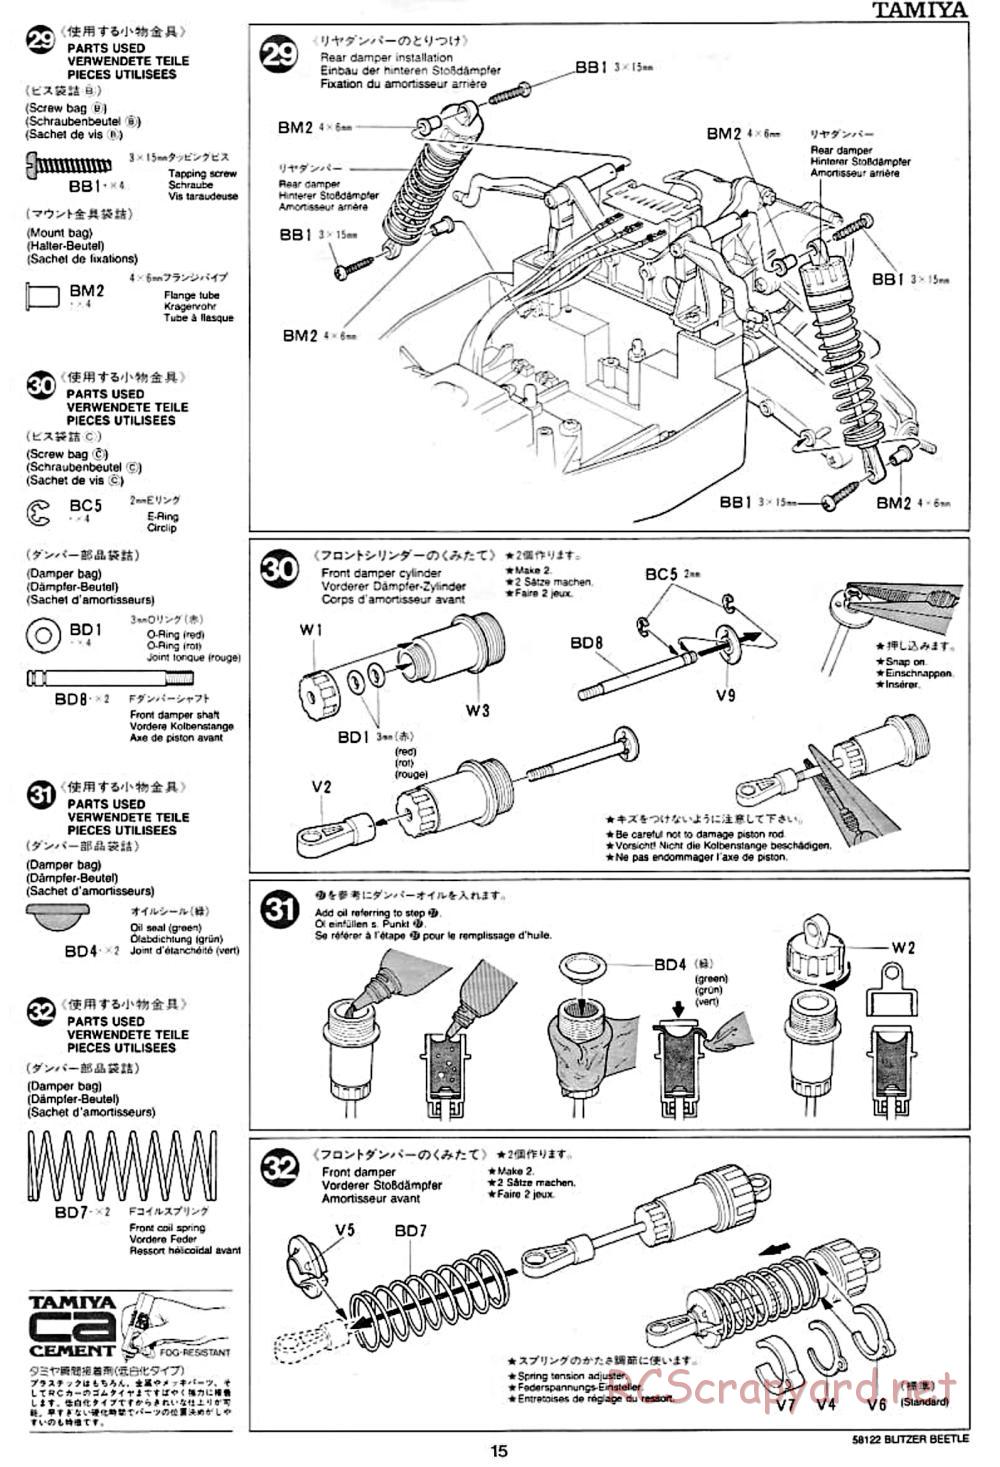 Tamiya - Blitzer Beetle Chassis - Manual - Page 15